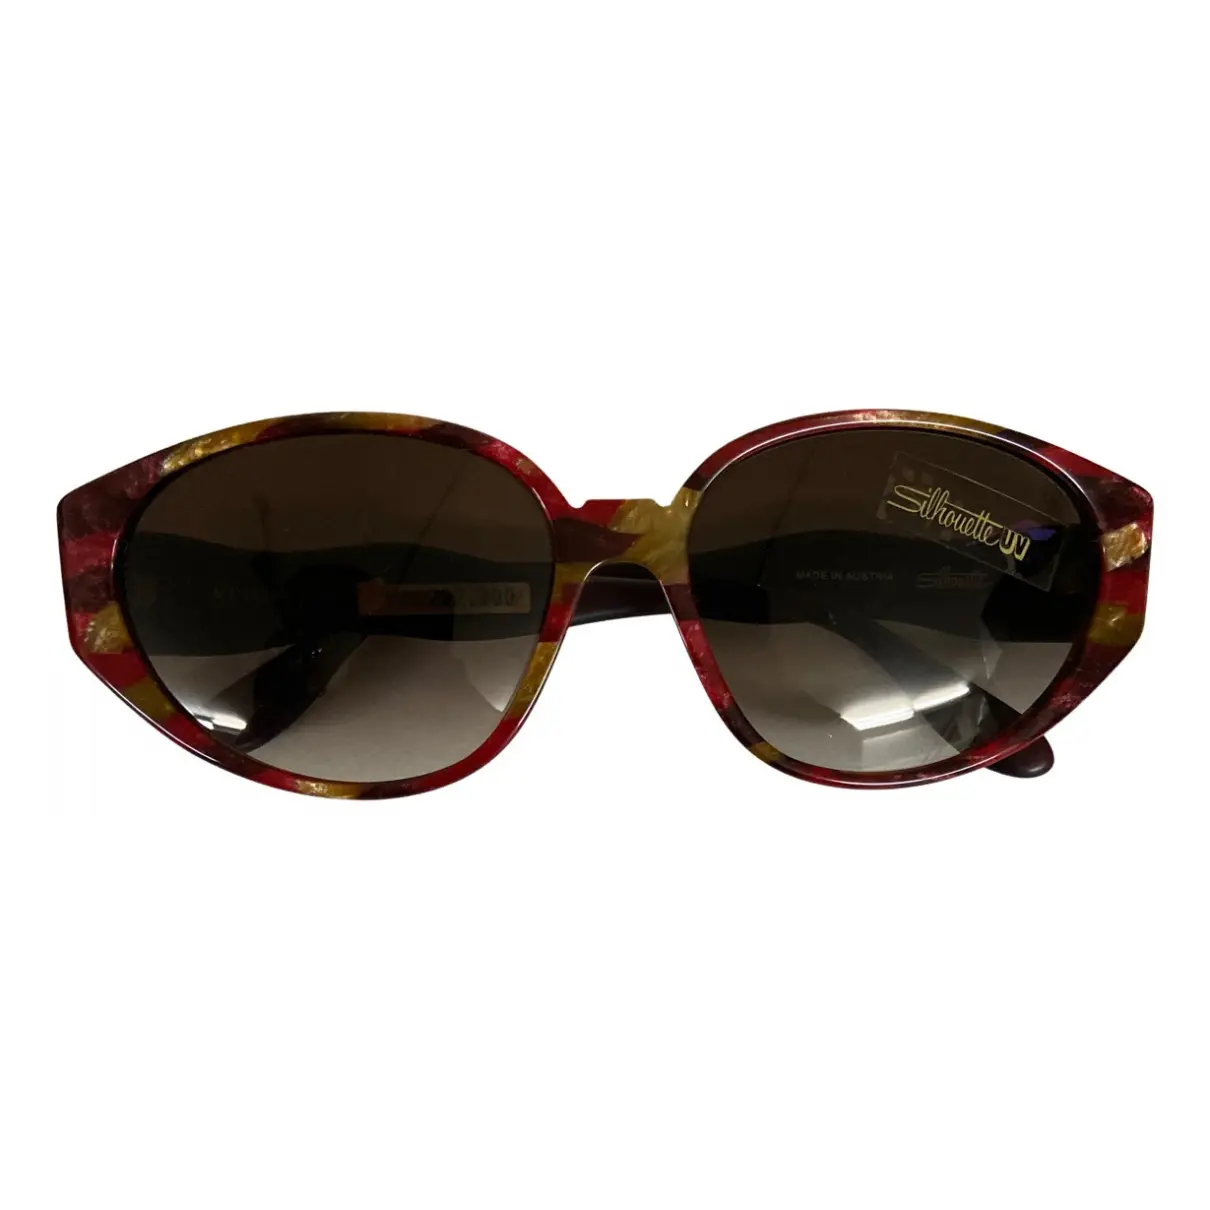 Sunglasses Silhouette - Vintage